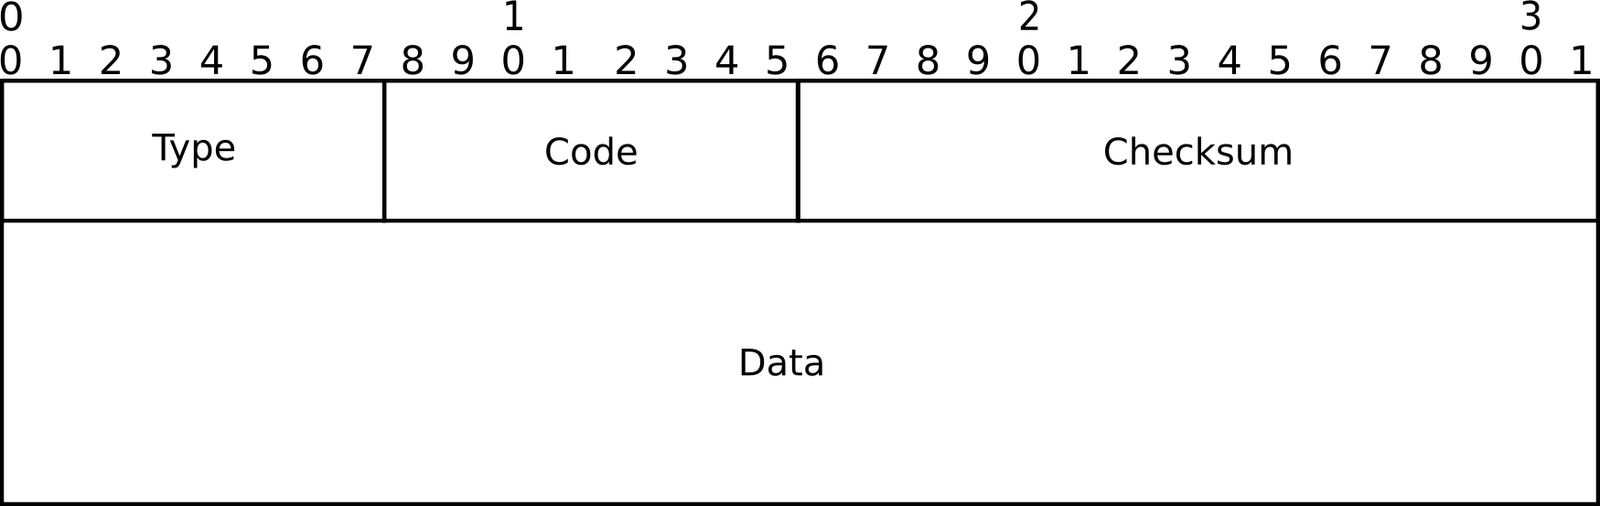 Figura 2: Formato do Pacote ICMPv6